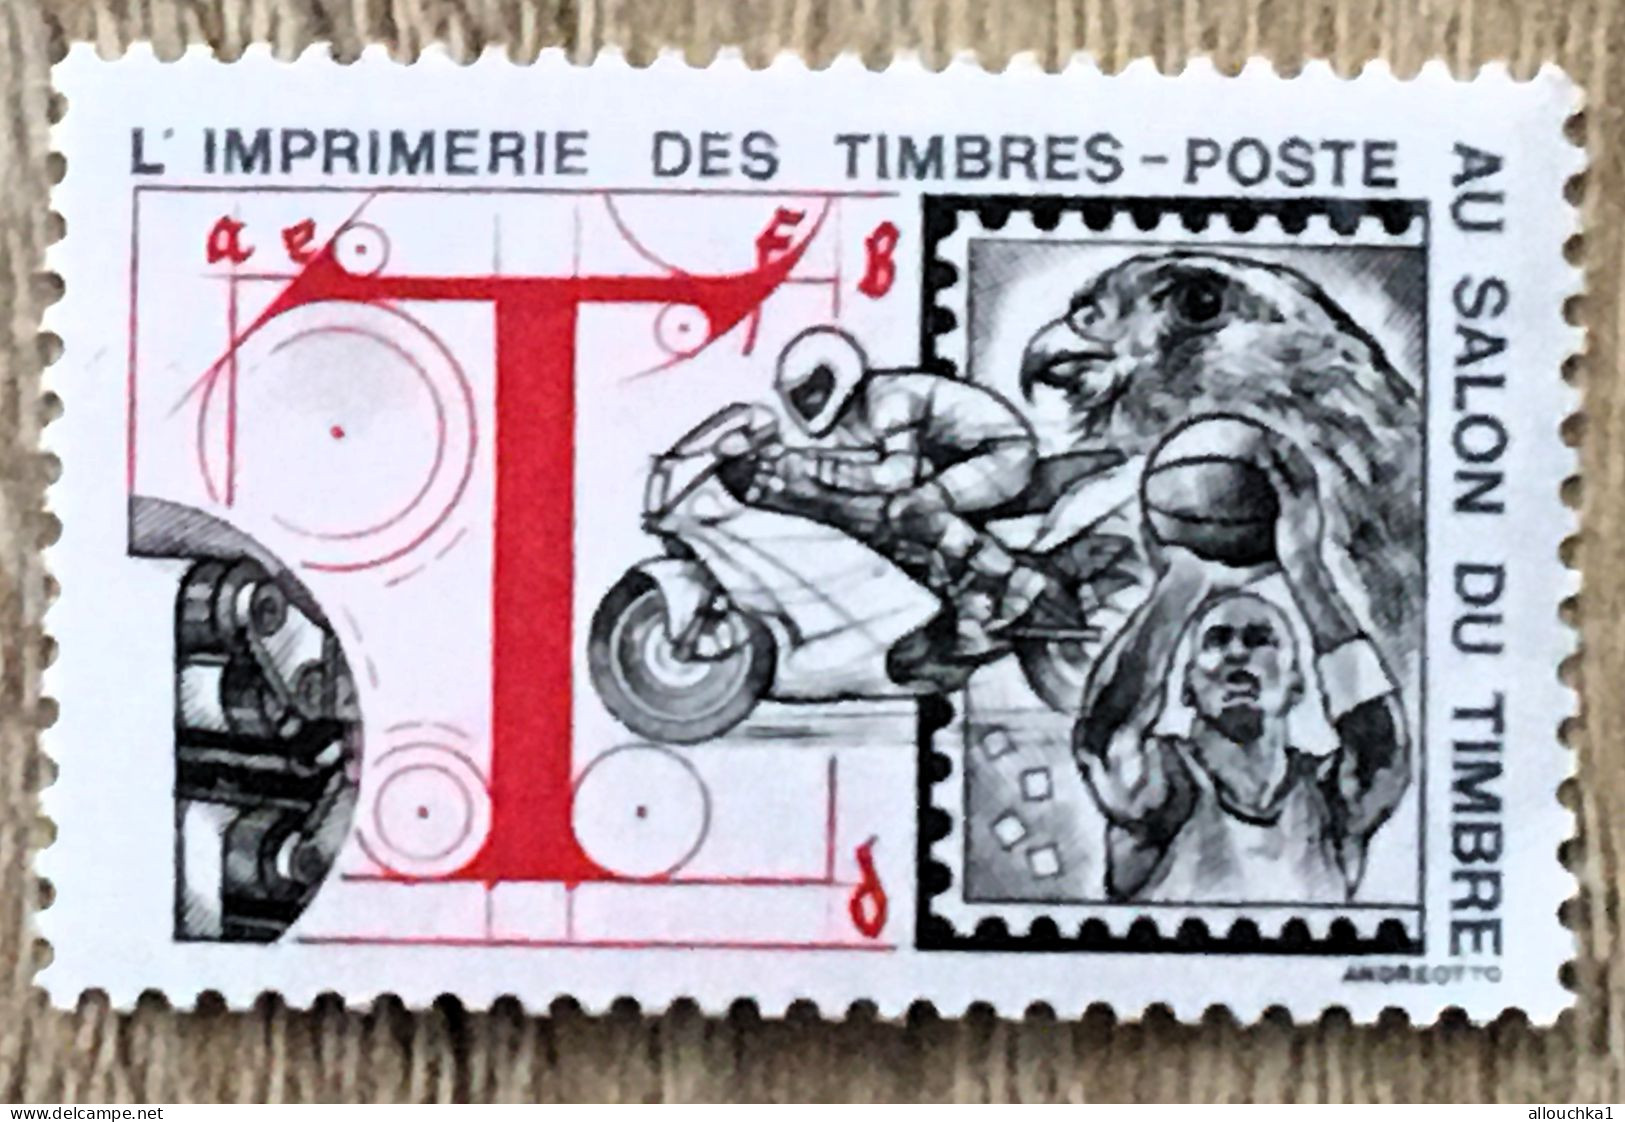 Imprimerie Timbres Poste Au Salon Du Timbre-2 Timbres Vignette**Expo-Philatélique-Erinnophilie-[E]Stamp-Sticker-Viñeta - Expositions Philatéliques